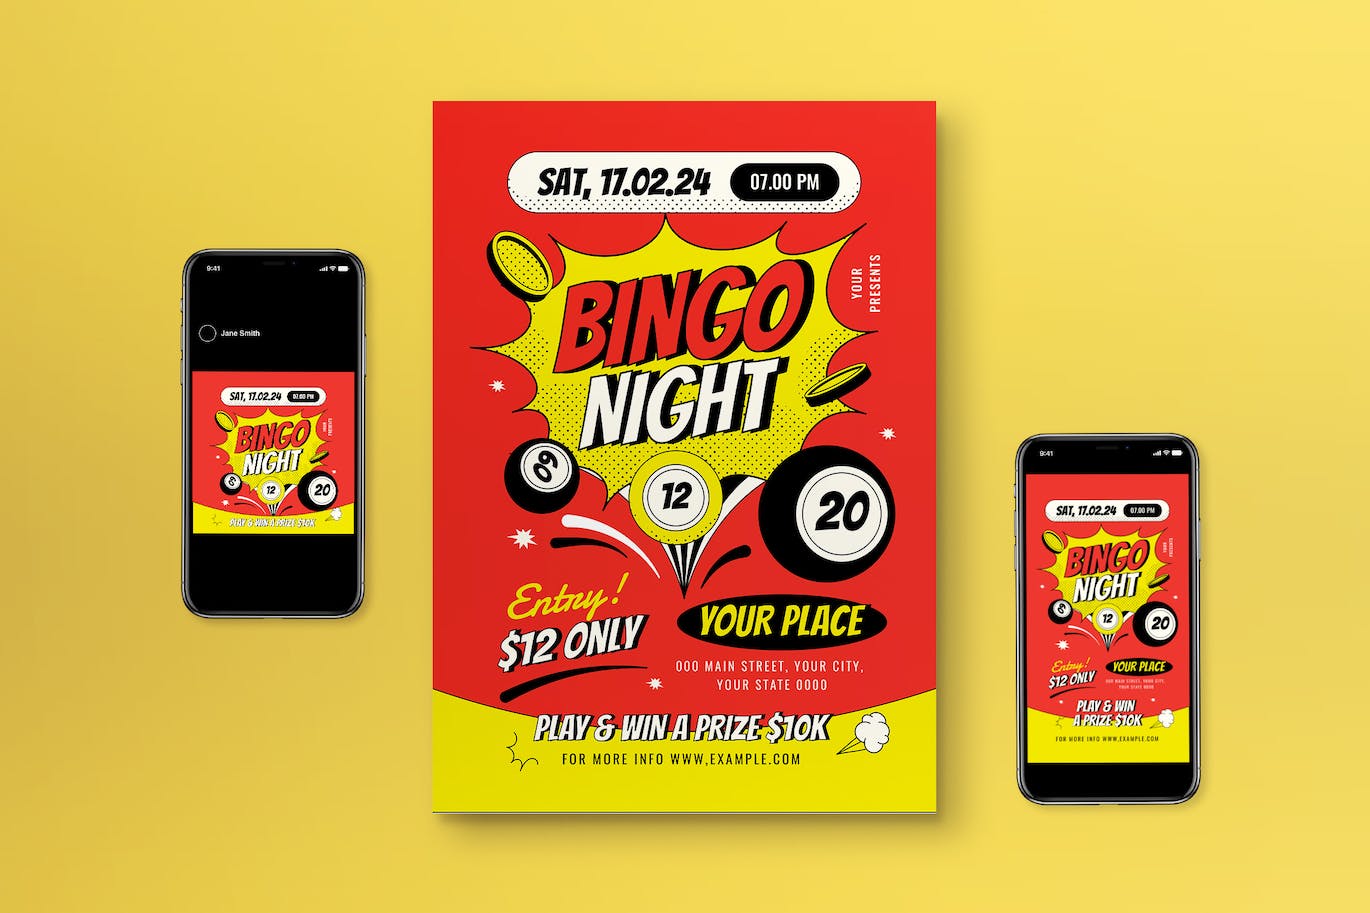 红色波普艺术宾果之夜海报设计模板 Red Pop Art Bingo Night Flyer Set 设计素材 第1张